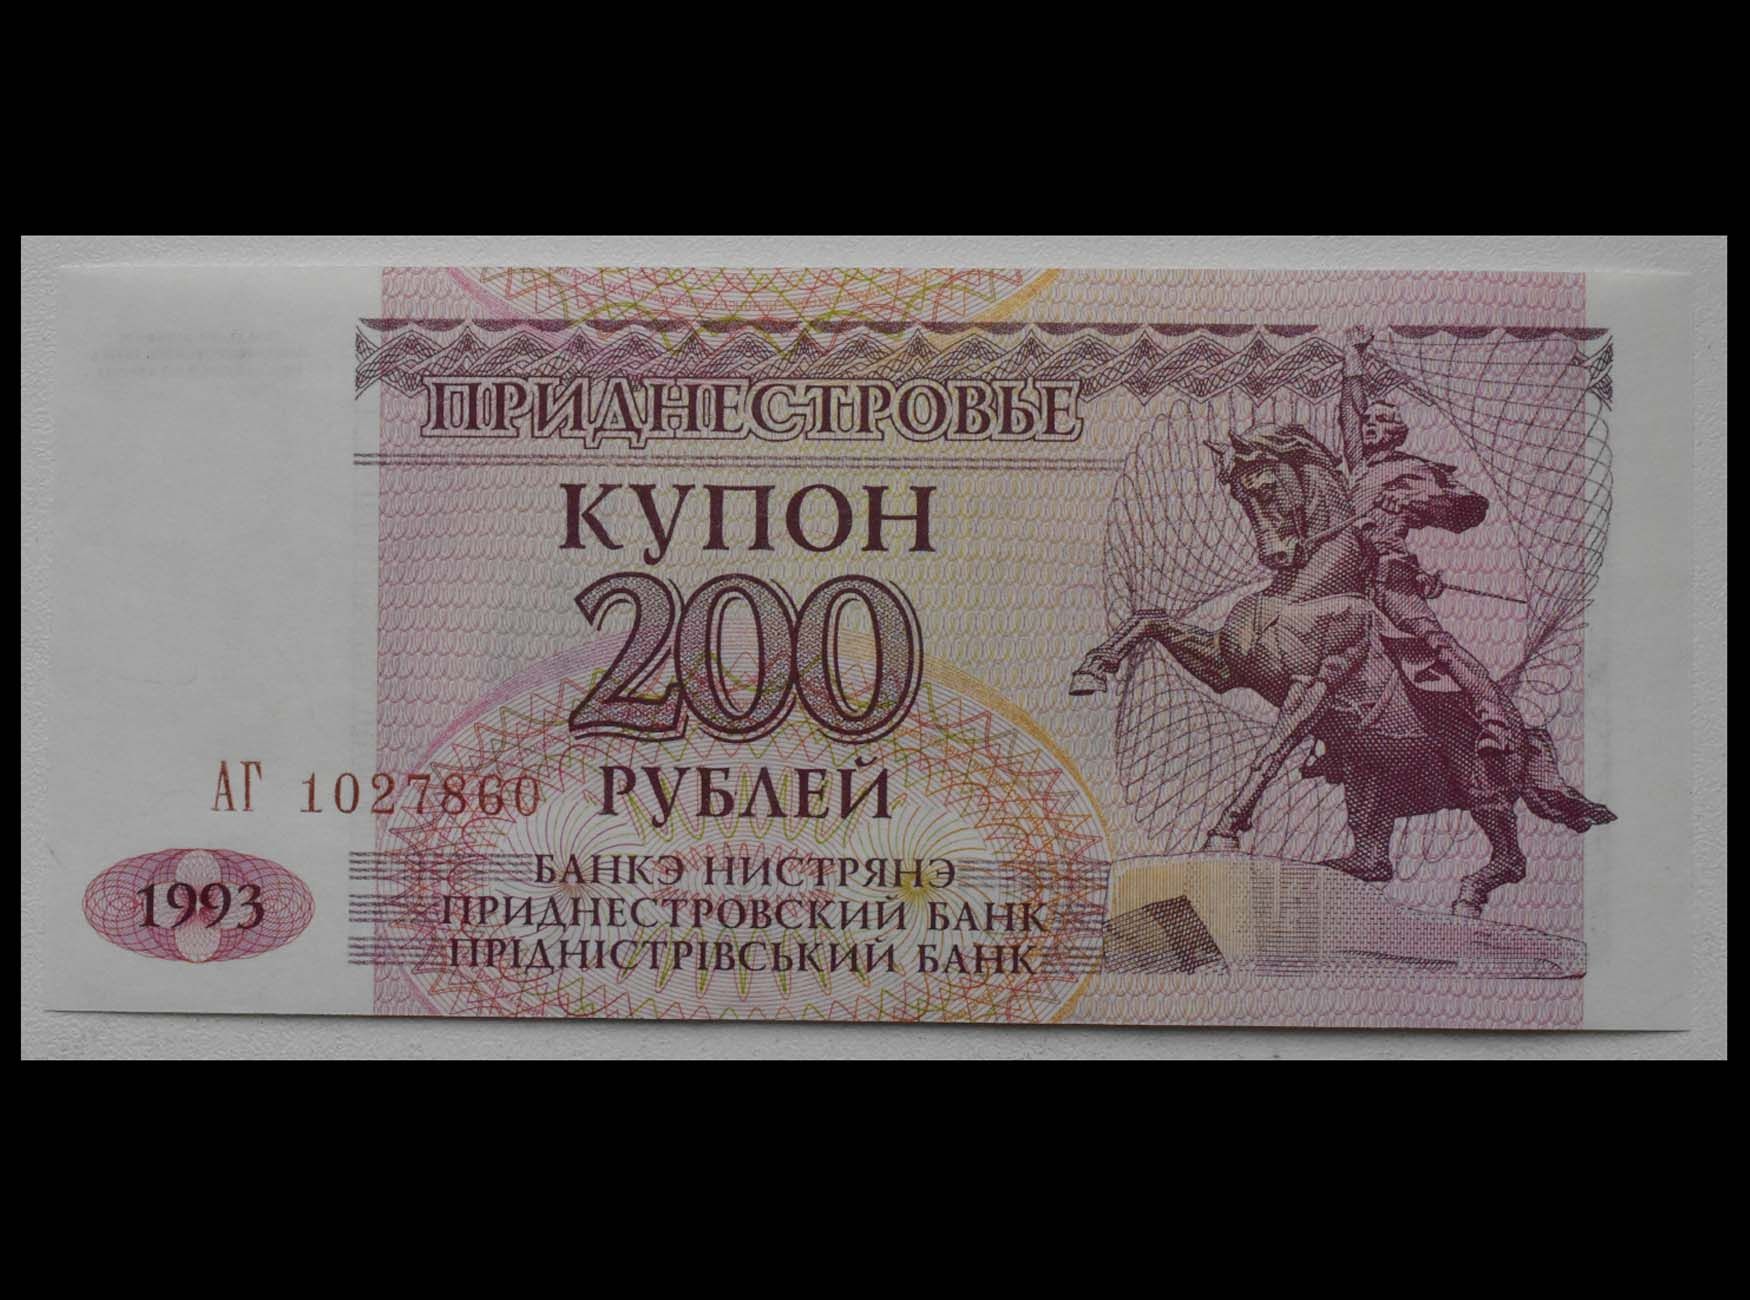 9 200 в рублях